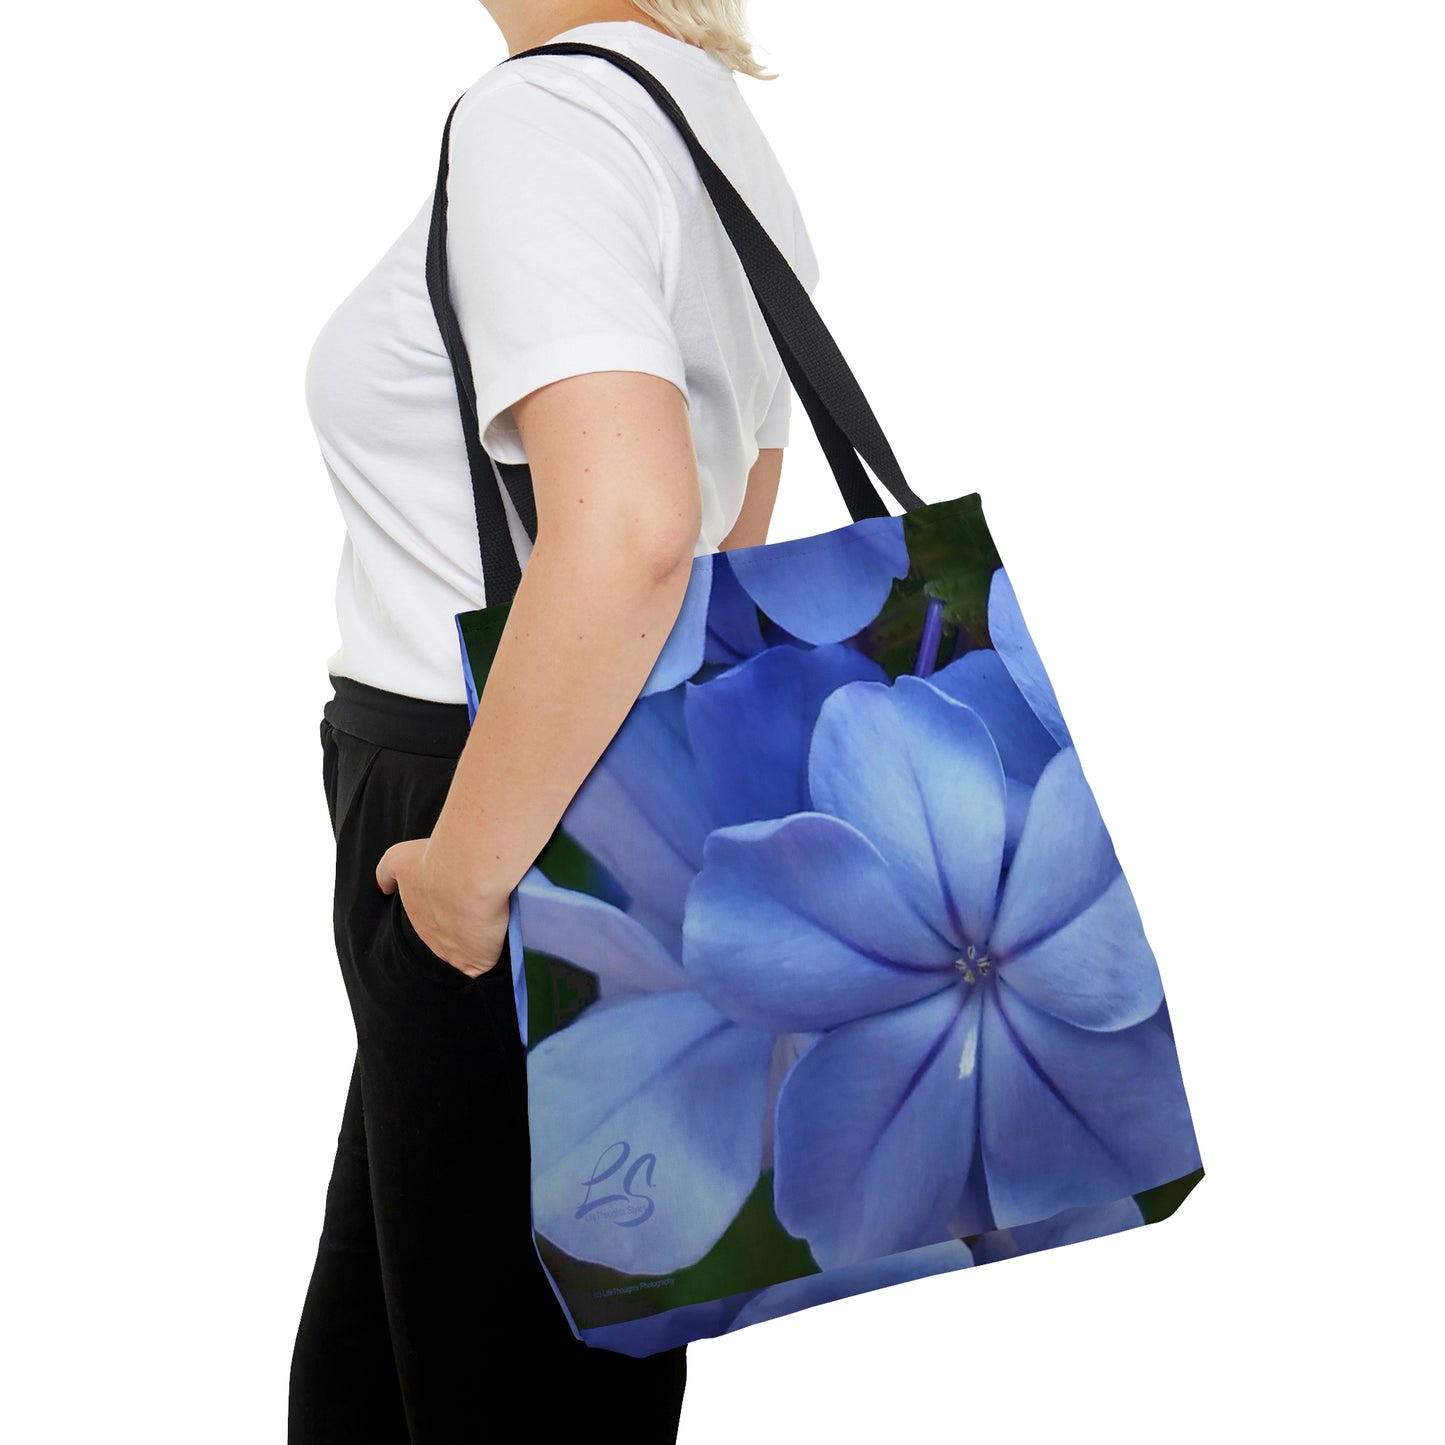 Blue Floral Tote Bag